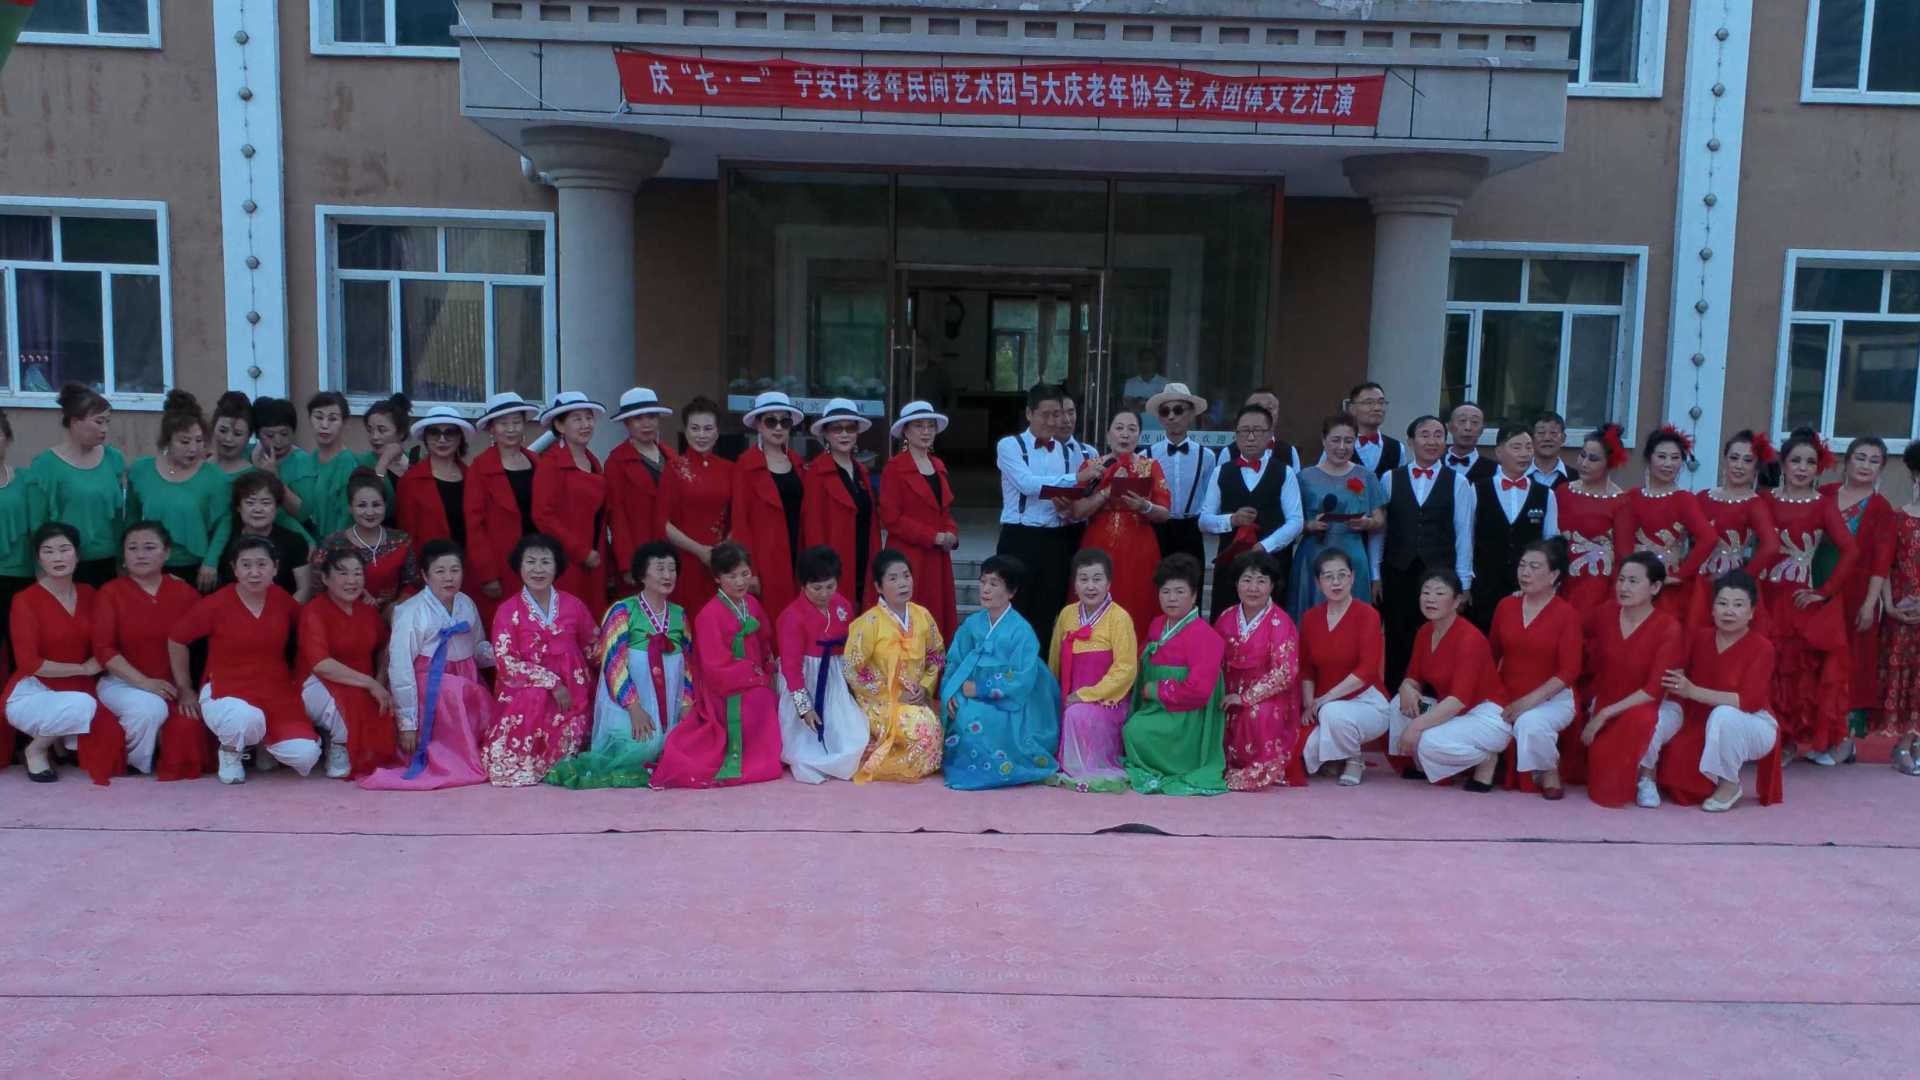 大庆萨区老年协会与宁安市老年文艺团队在柴河举办了文艺汇演-静海制作